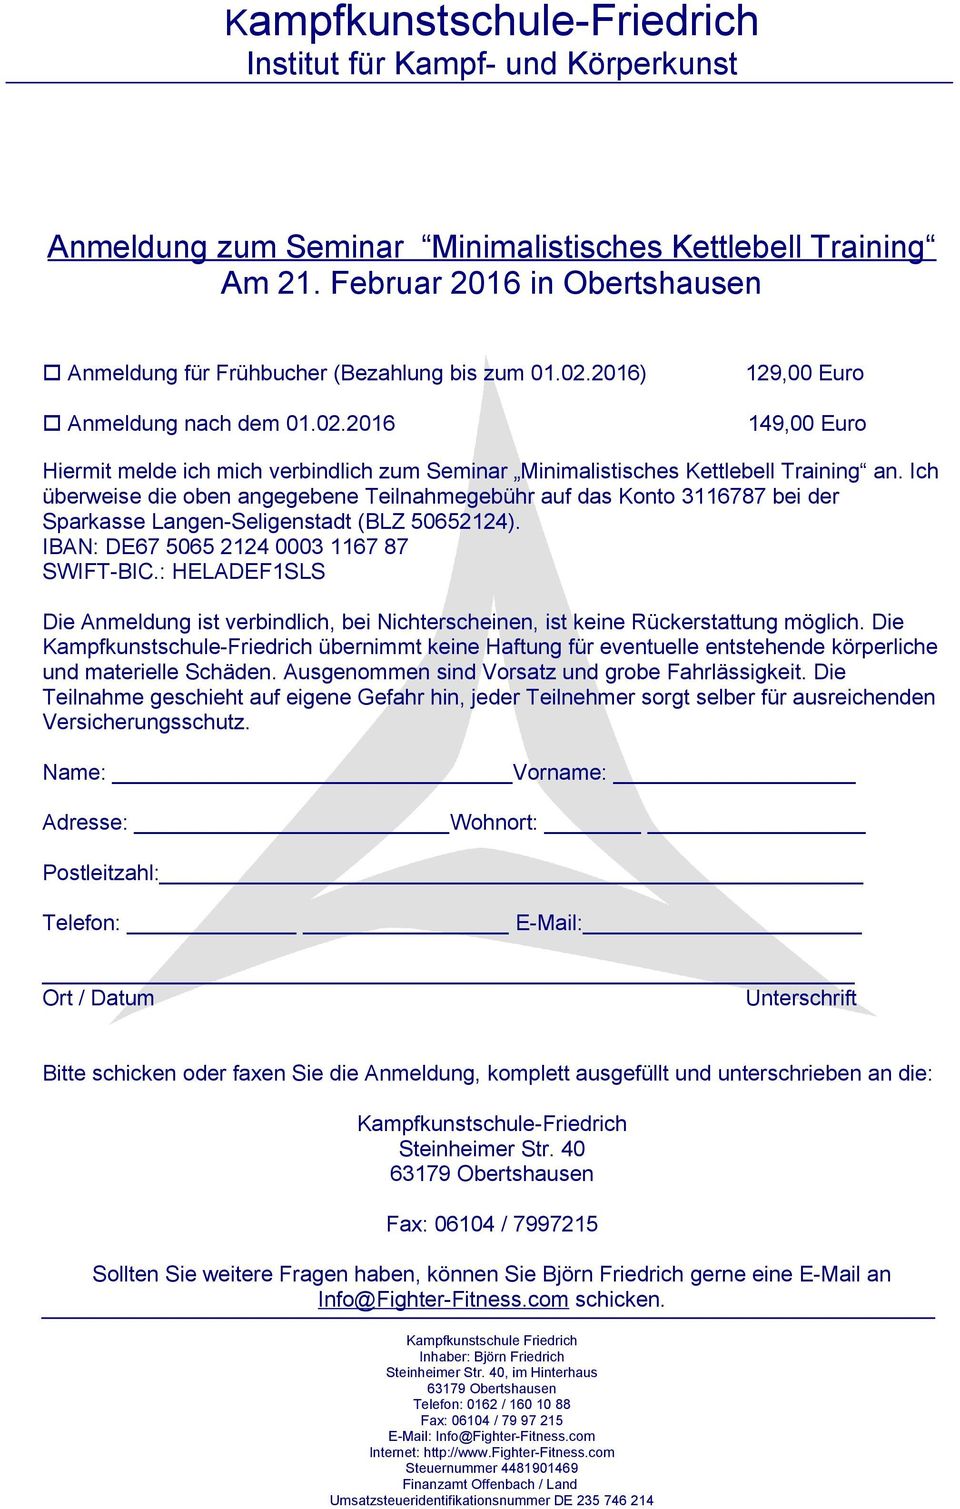 Ich überweise die oben angegebene Teilnahmegebühr auf das Konto 3116787 bei der Sparkasse Langen-Seligenstadt (BLZ 50652124). IBAN: DE67 5065 2124 0003 1167 87 SWIFT-BIC.